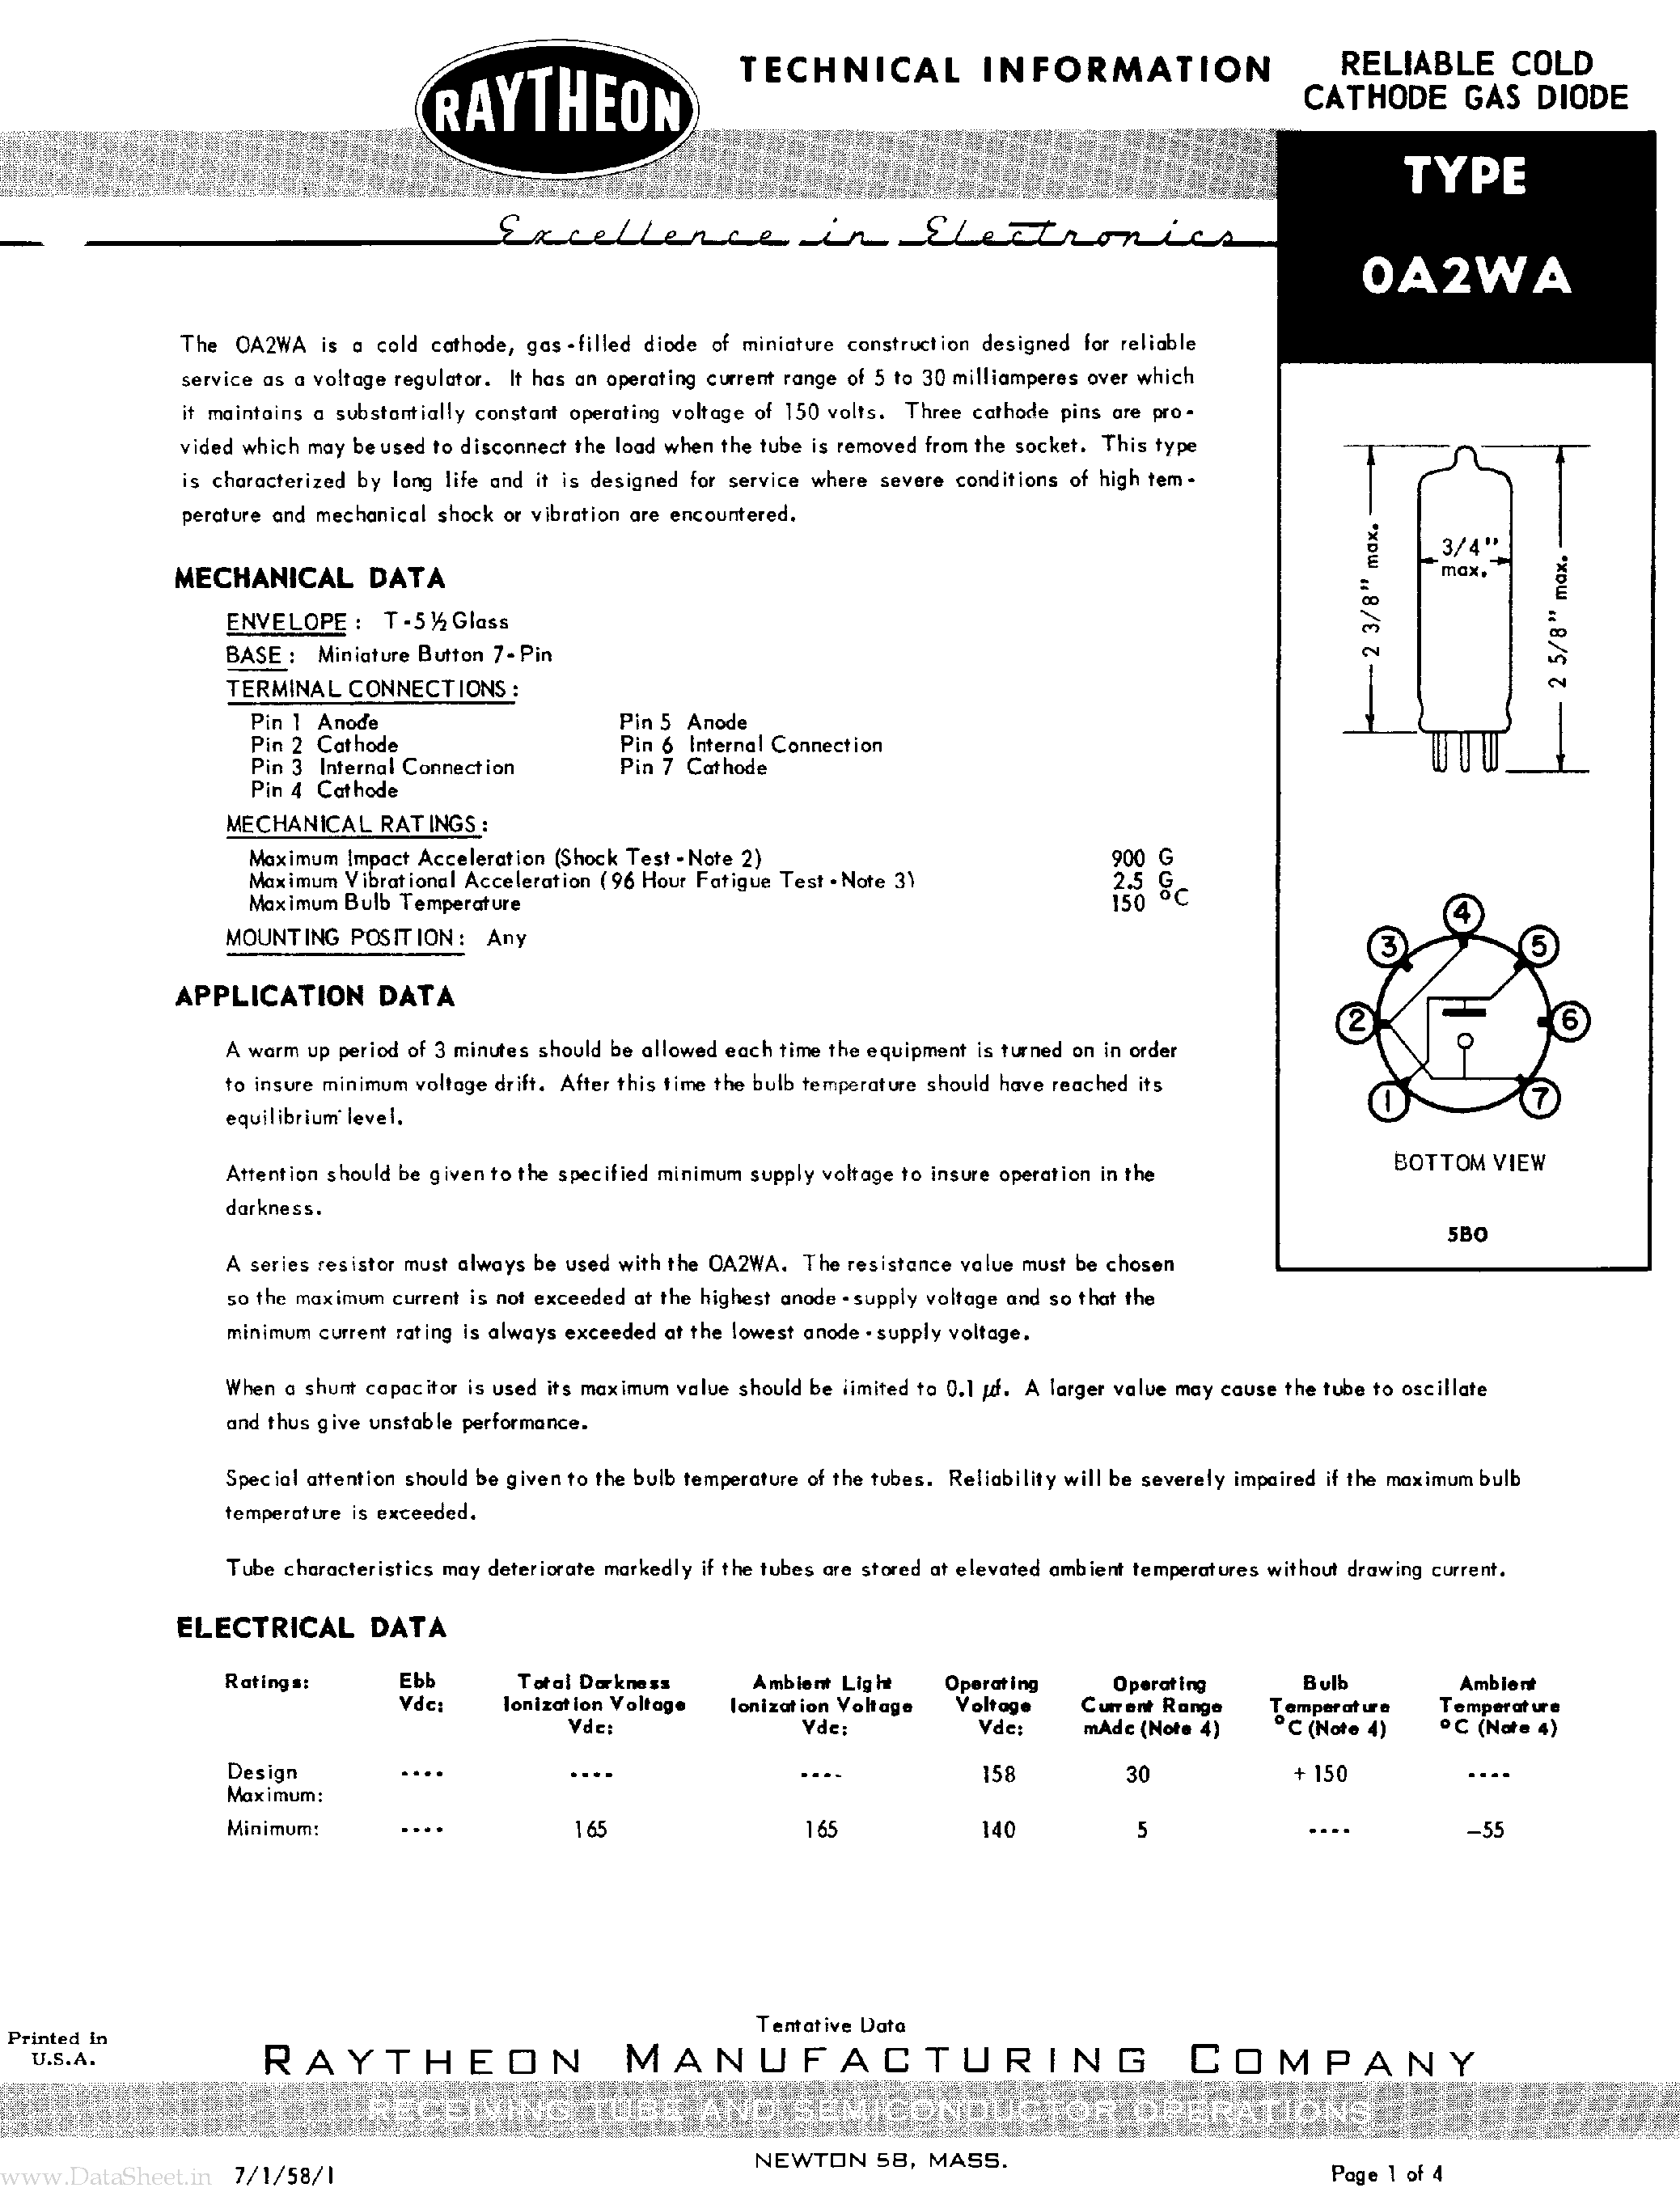 Даташит 0A2WA - Reliable Cold Cathode Gas Diode страница 1